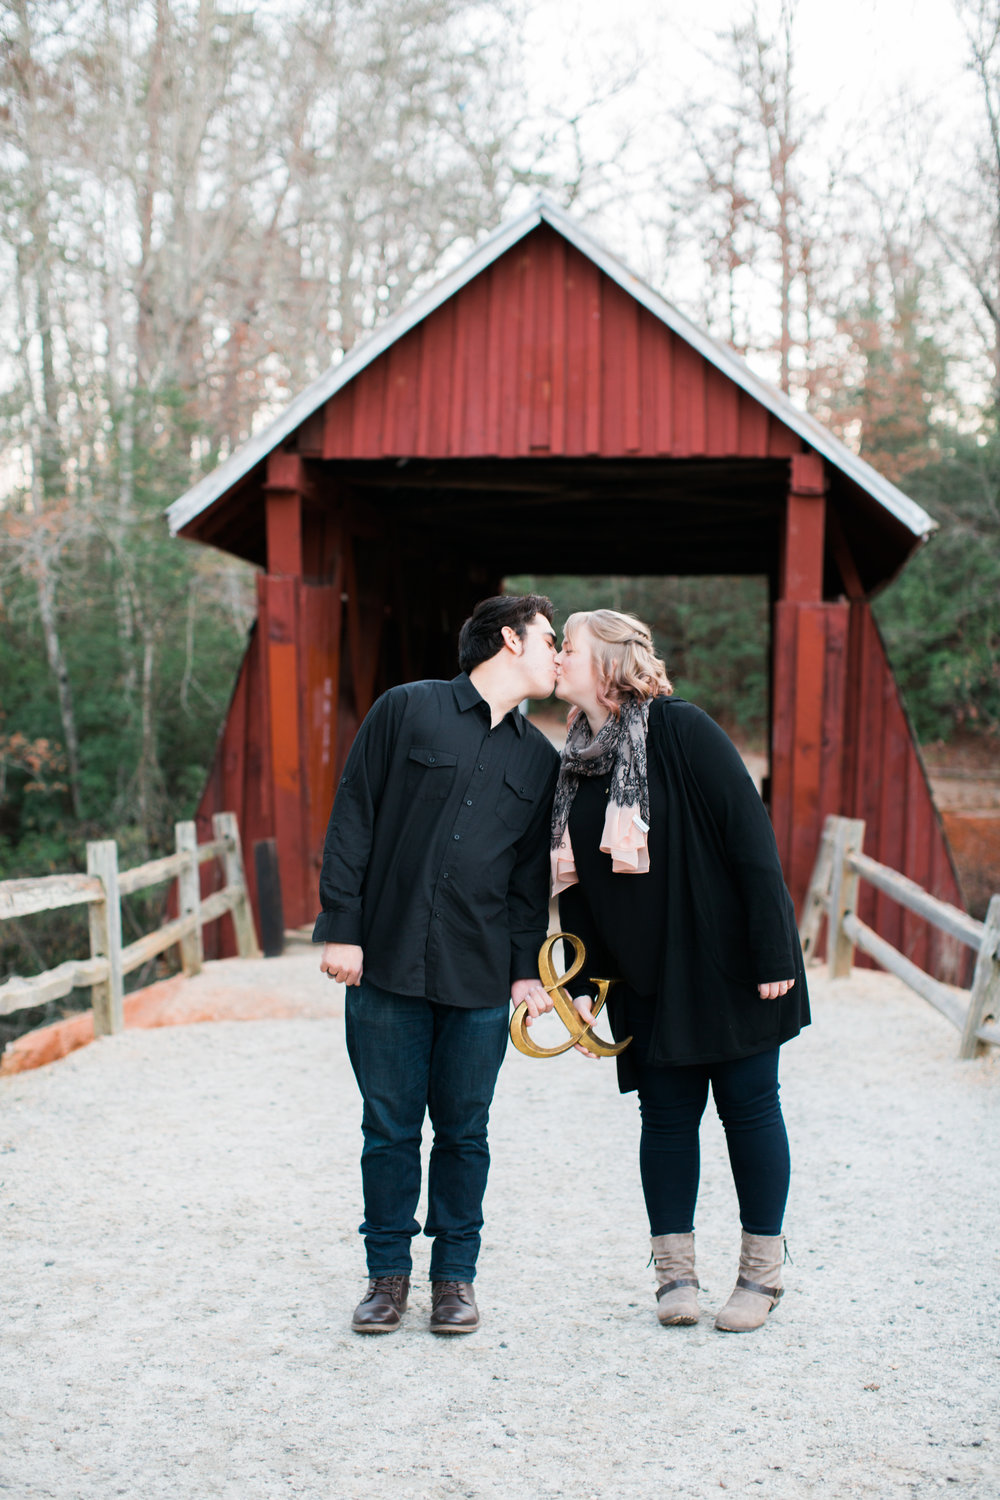 Edwin and Megan Kissing at Engagement Photo Shoot